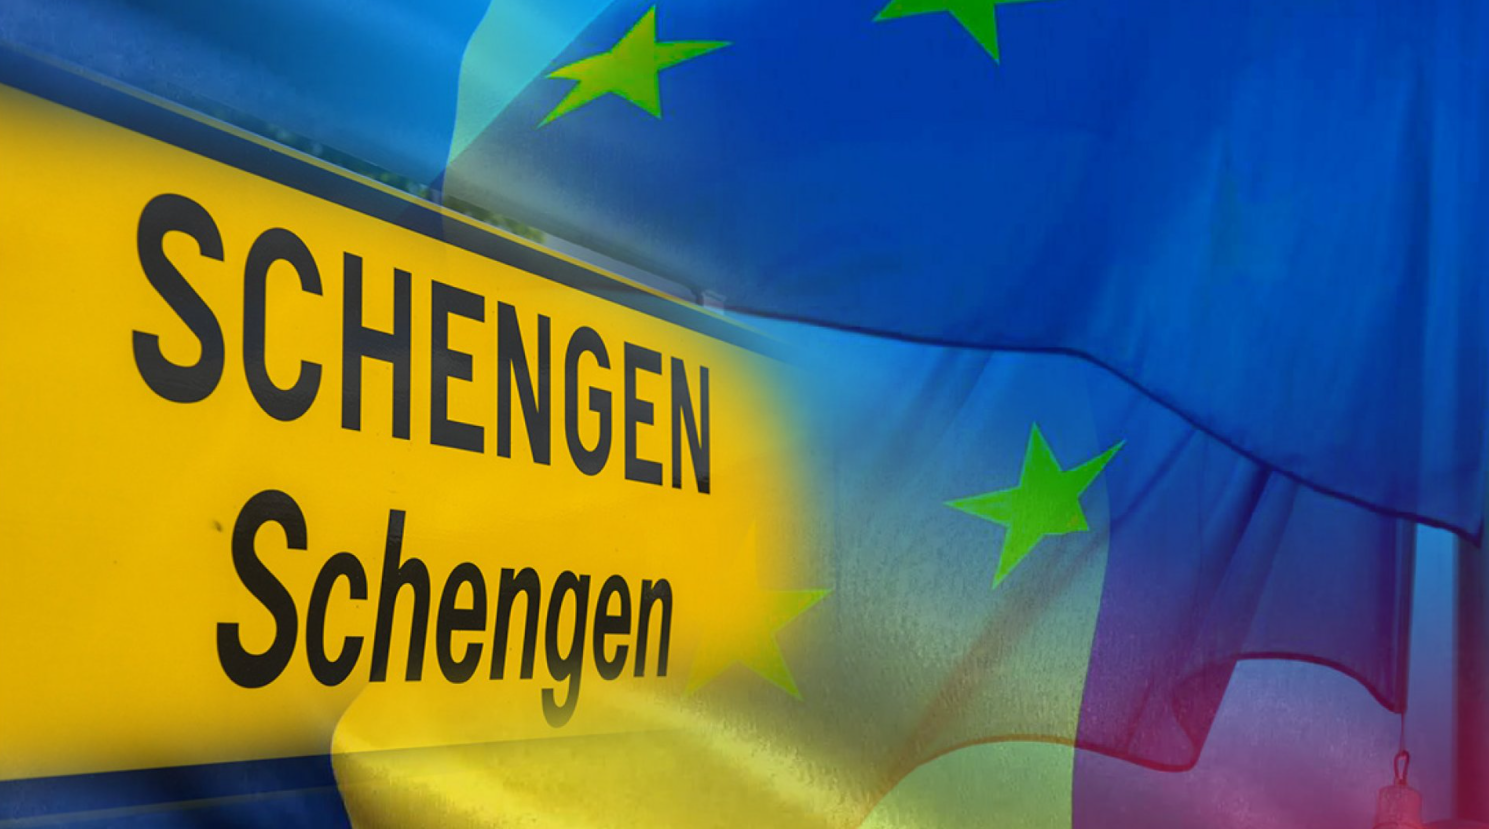 Avantajele aderării la Schengen pentru români: eliminarea așteptării la frontieră şi un control mai simplu la aeroport